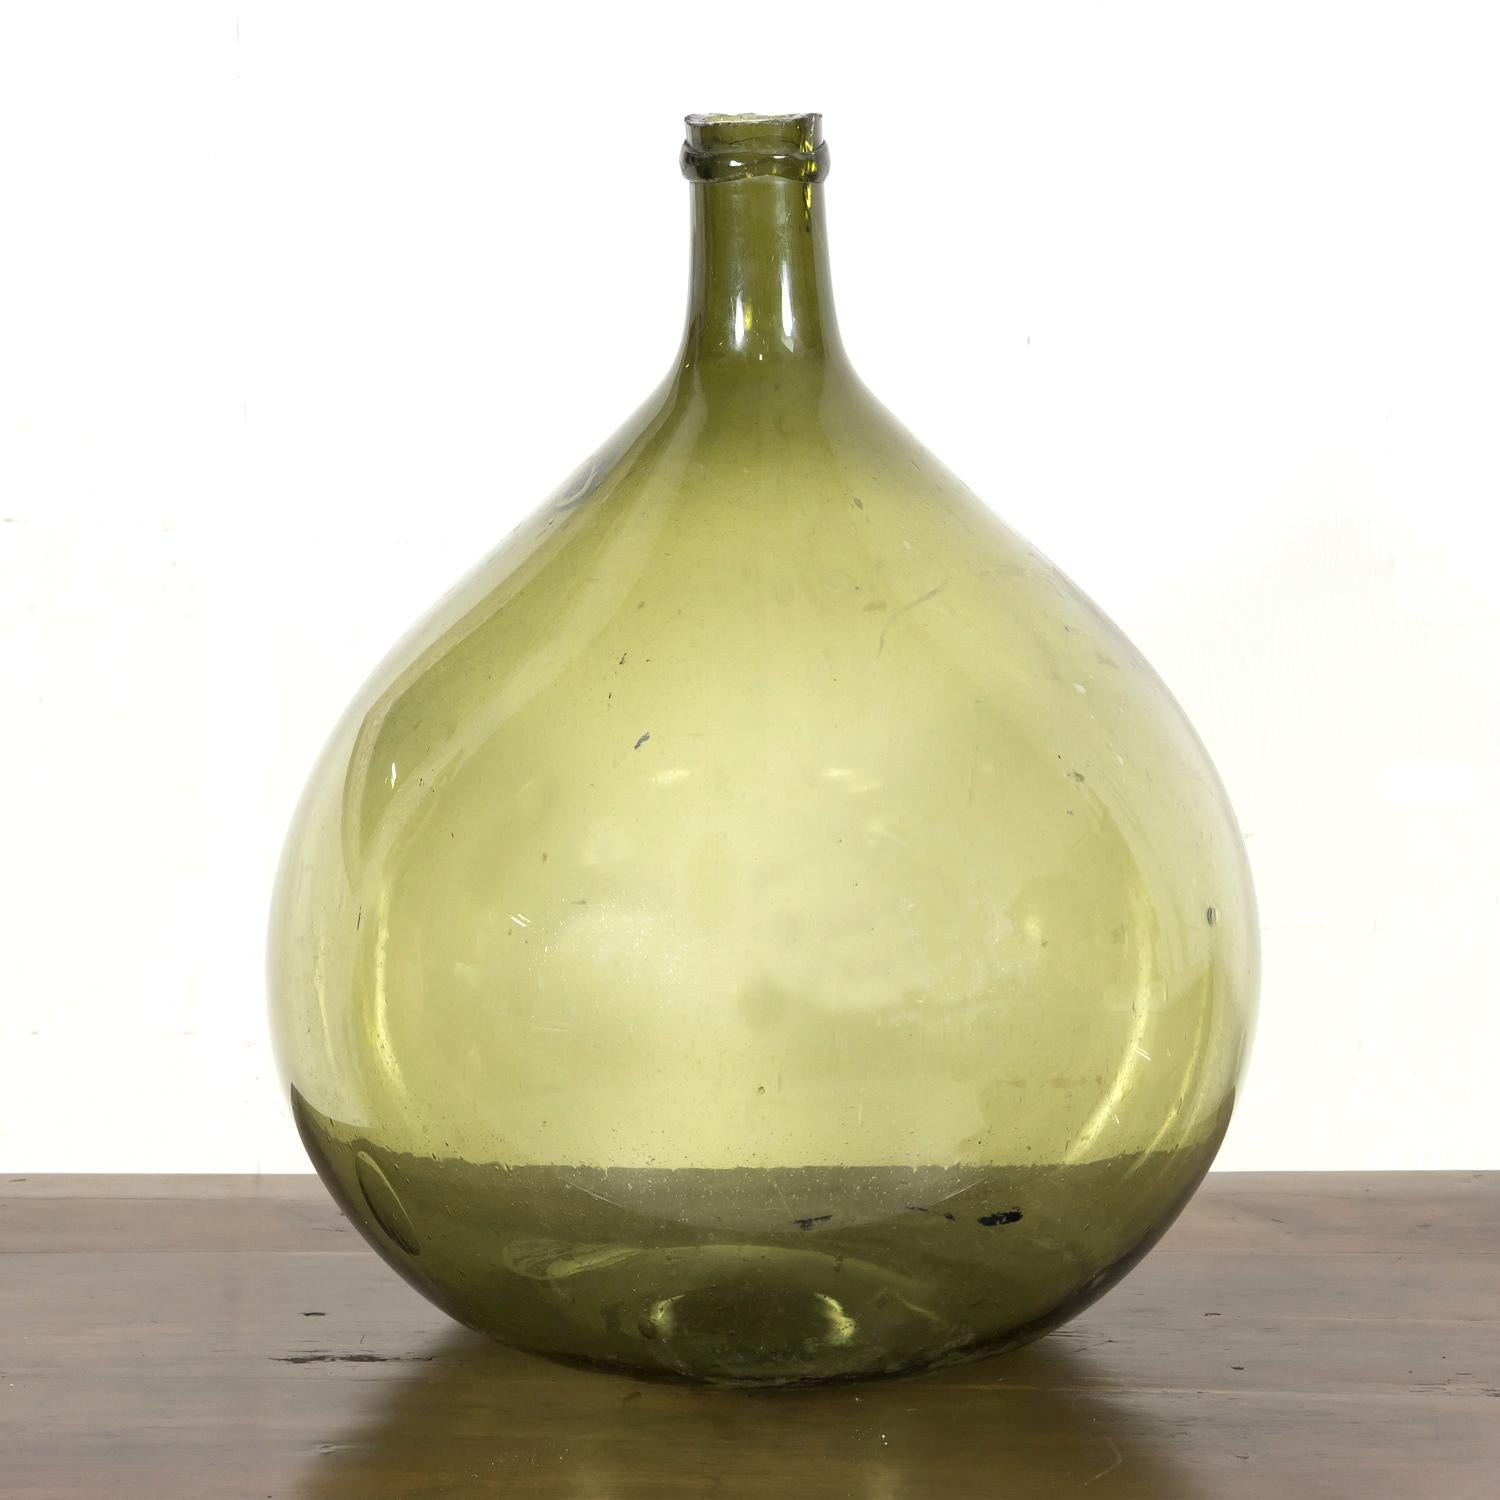 Magnifique bouteille en verre vert soufflé à la bouche ou Dame Jeanne, vers les années 1880, de forme bulbeuse et de couleur verte vive, avec des bulles visibles et sans coutures, ce qui indique qu'elle a été soufflée à la main plutôt que fabriquée